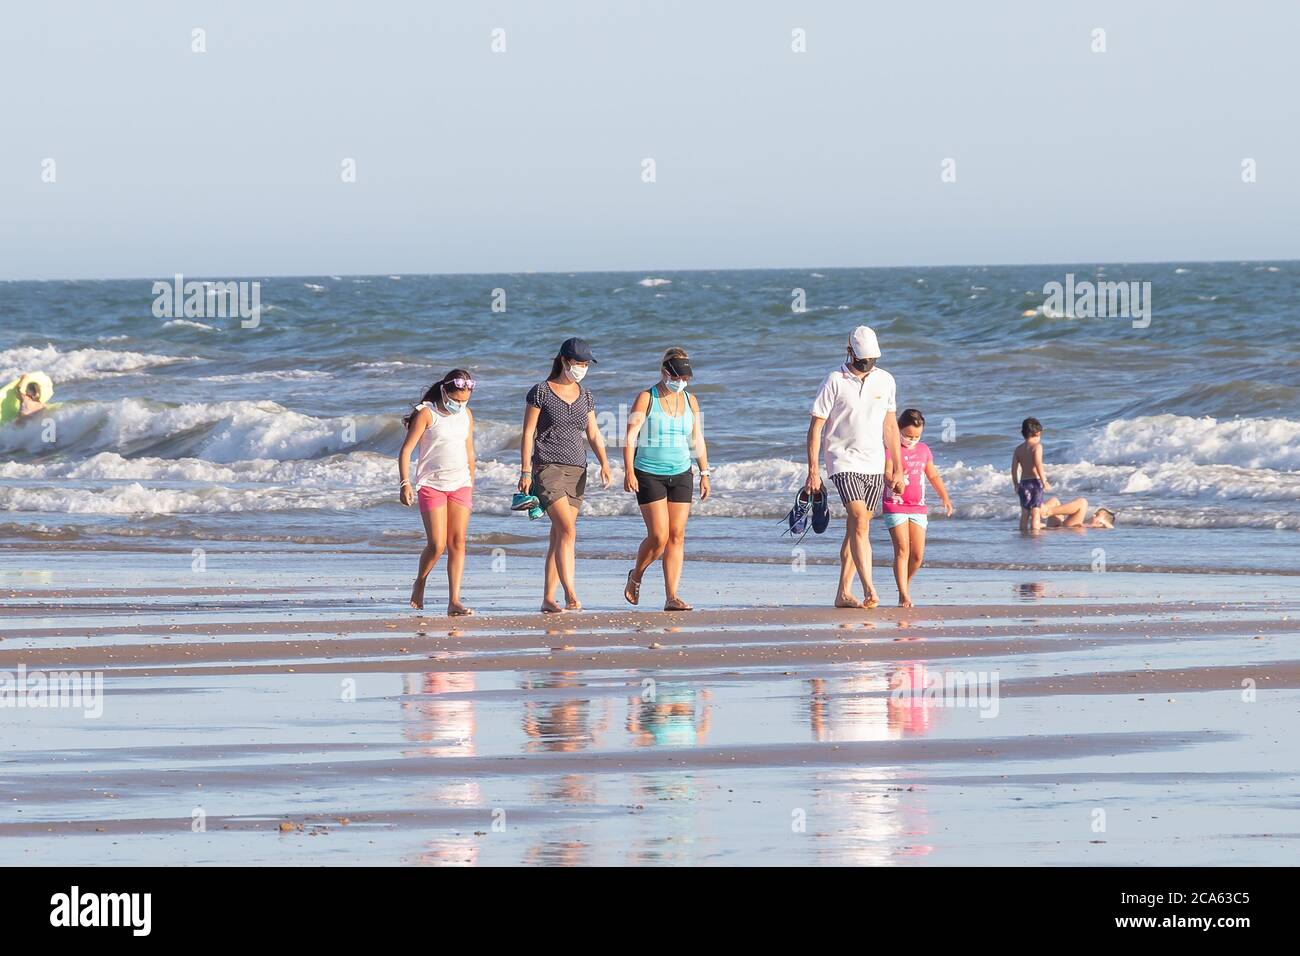 Punta Umbria, Huelva, Spagna - 2 agosto 2020: Una famiglia che cammina sulla spiaggia indossando maschere protettive o mediche. Nuova normalità in Spagna con sociale Foto Stock